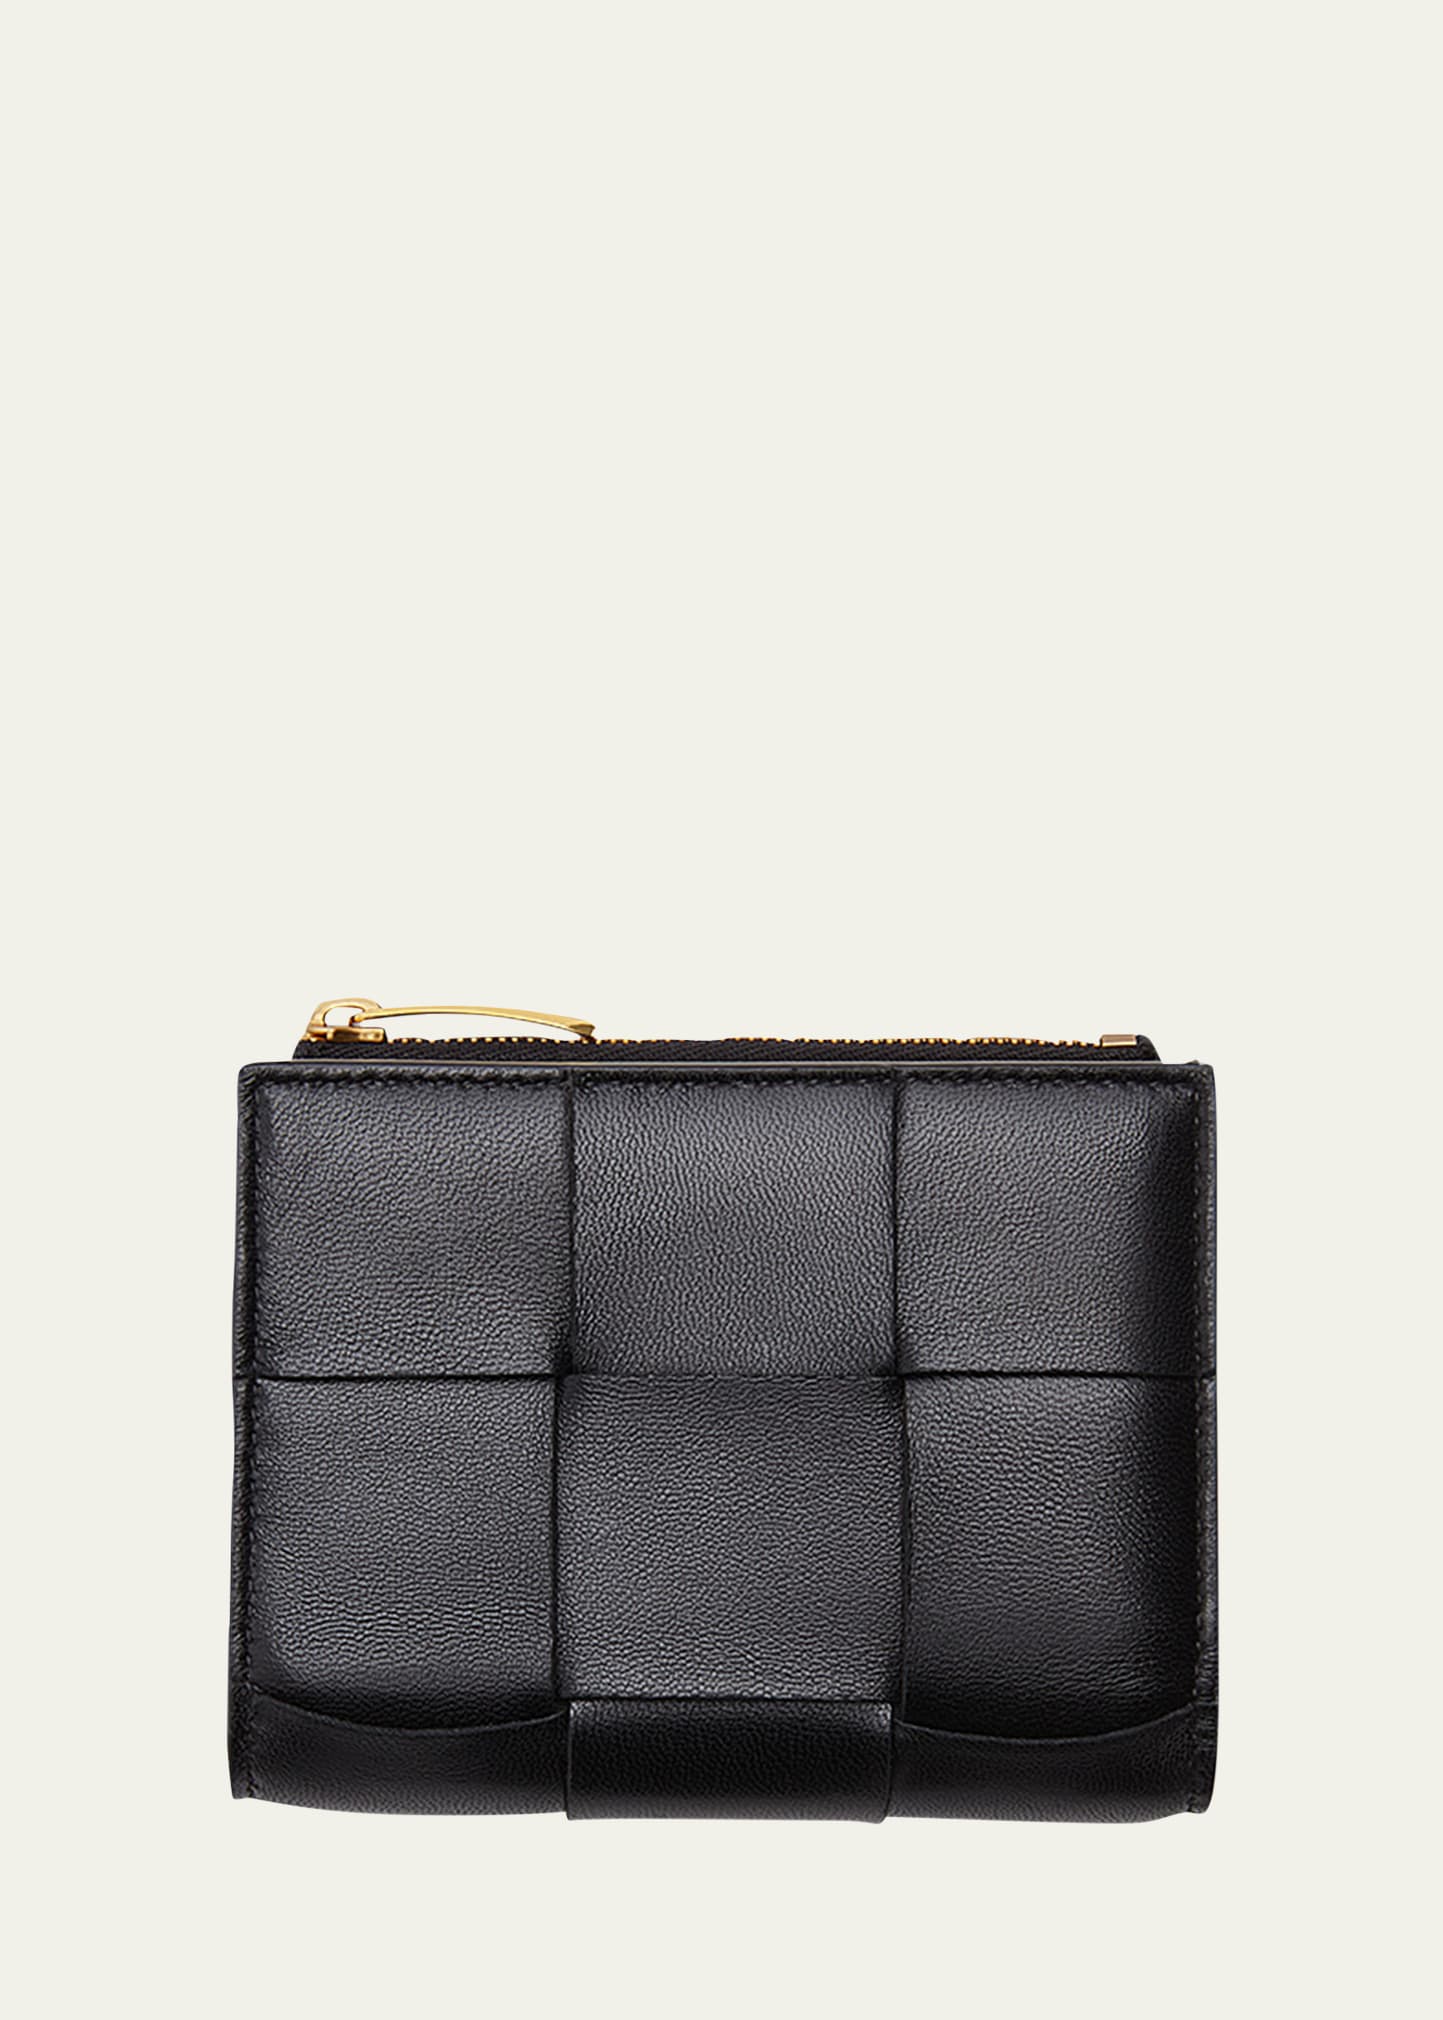 Bottega Veneta Cassette Intrecciato-leather Bi-fold Wallet In Black/gold